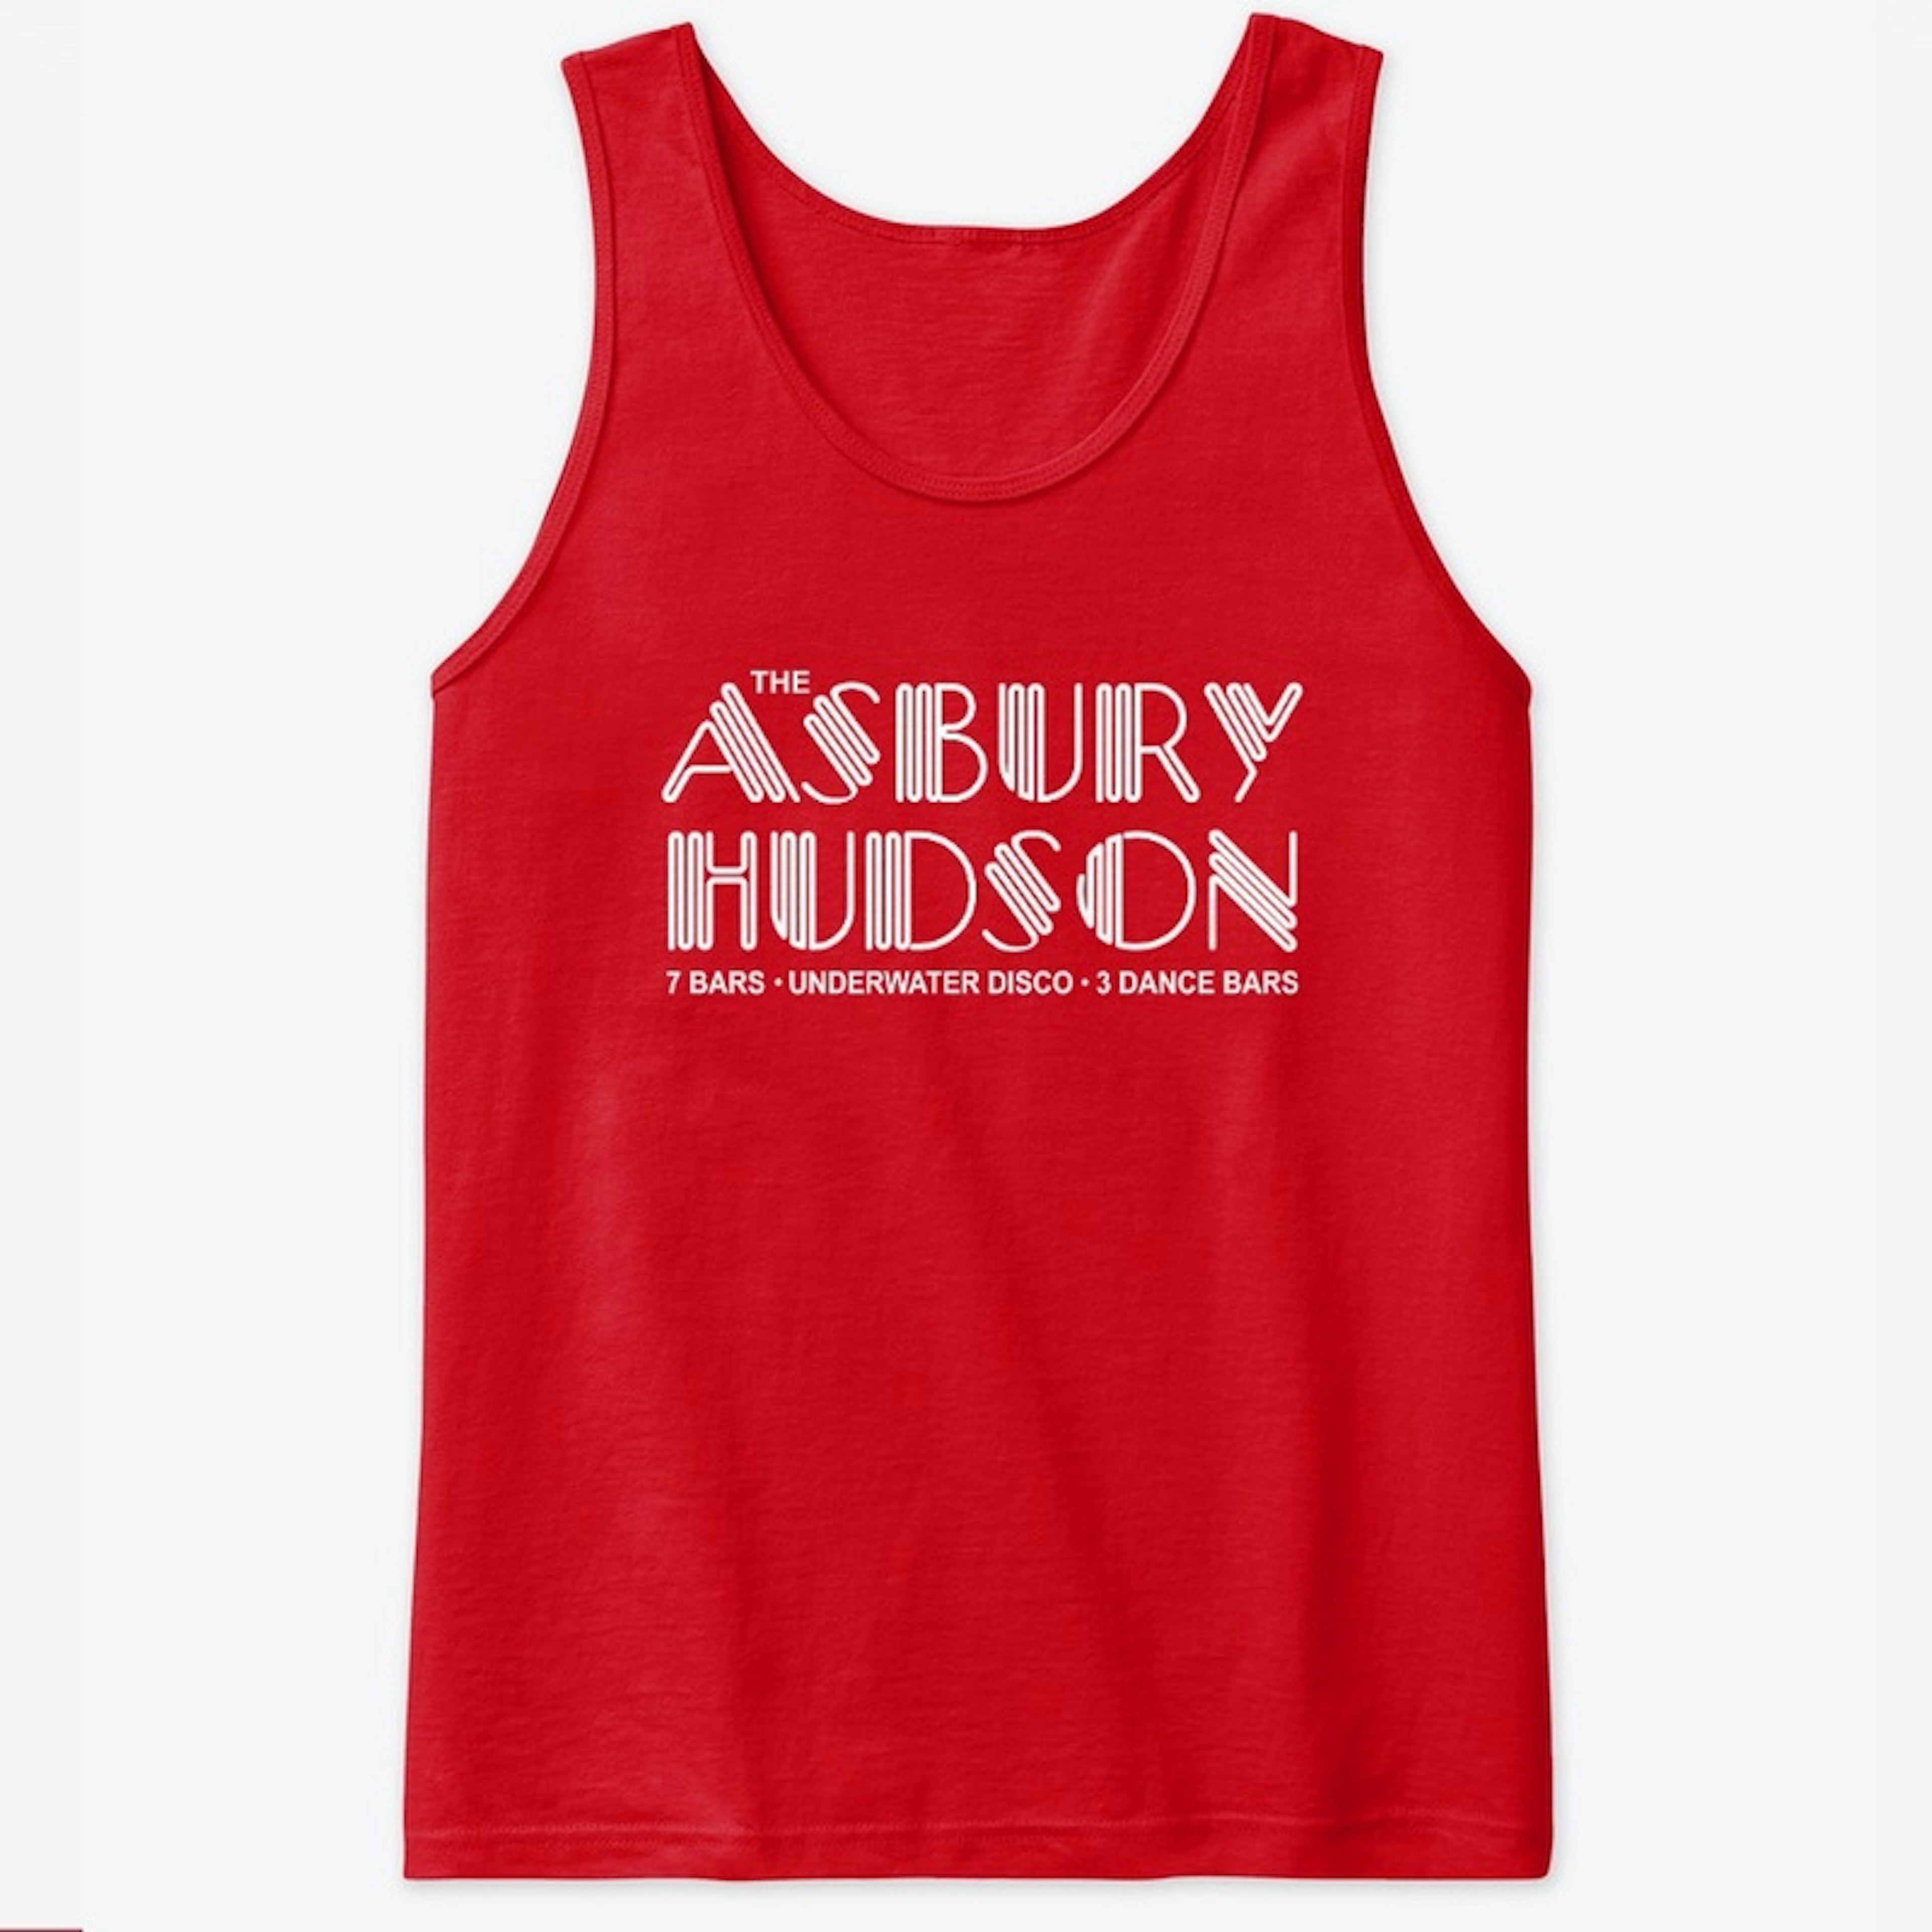 AsburyHudson